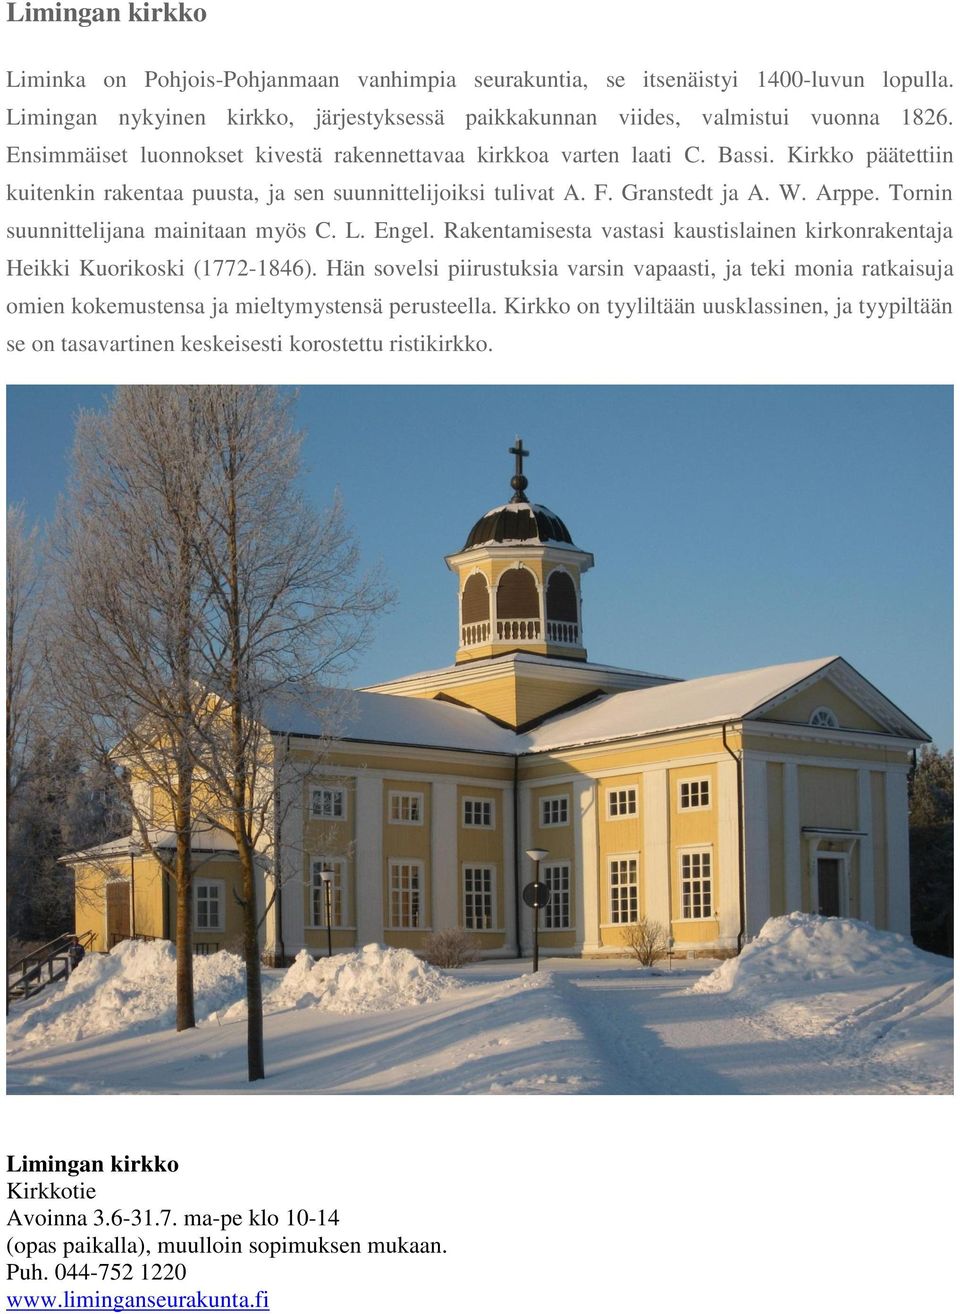 Tornin suunnittelijana mainitaan myös C. L. Engel. Rakentamisesta vastasi kaustislainen kirkonrakentaja Heikki Kuorikoski (1772-1846).